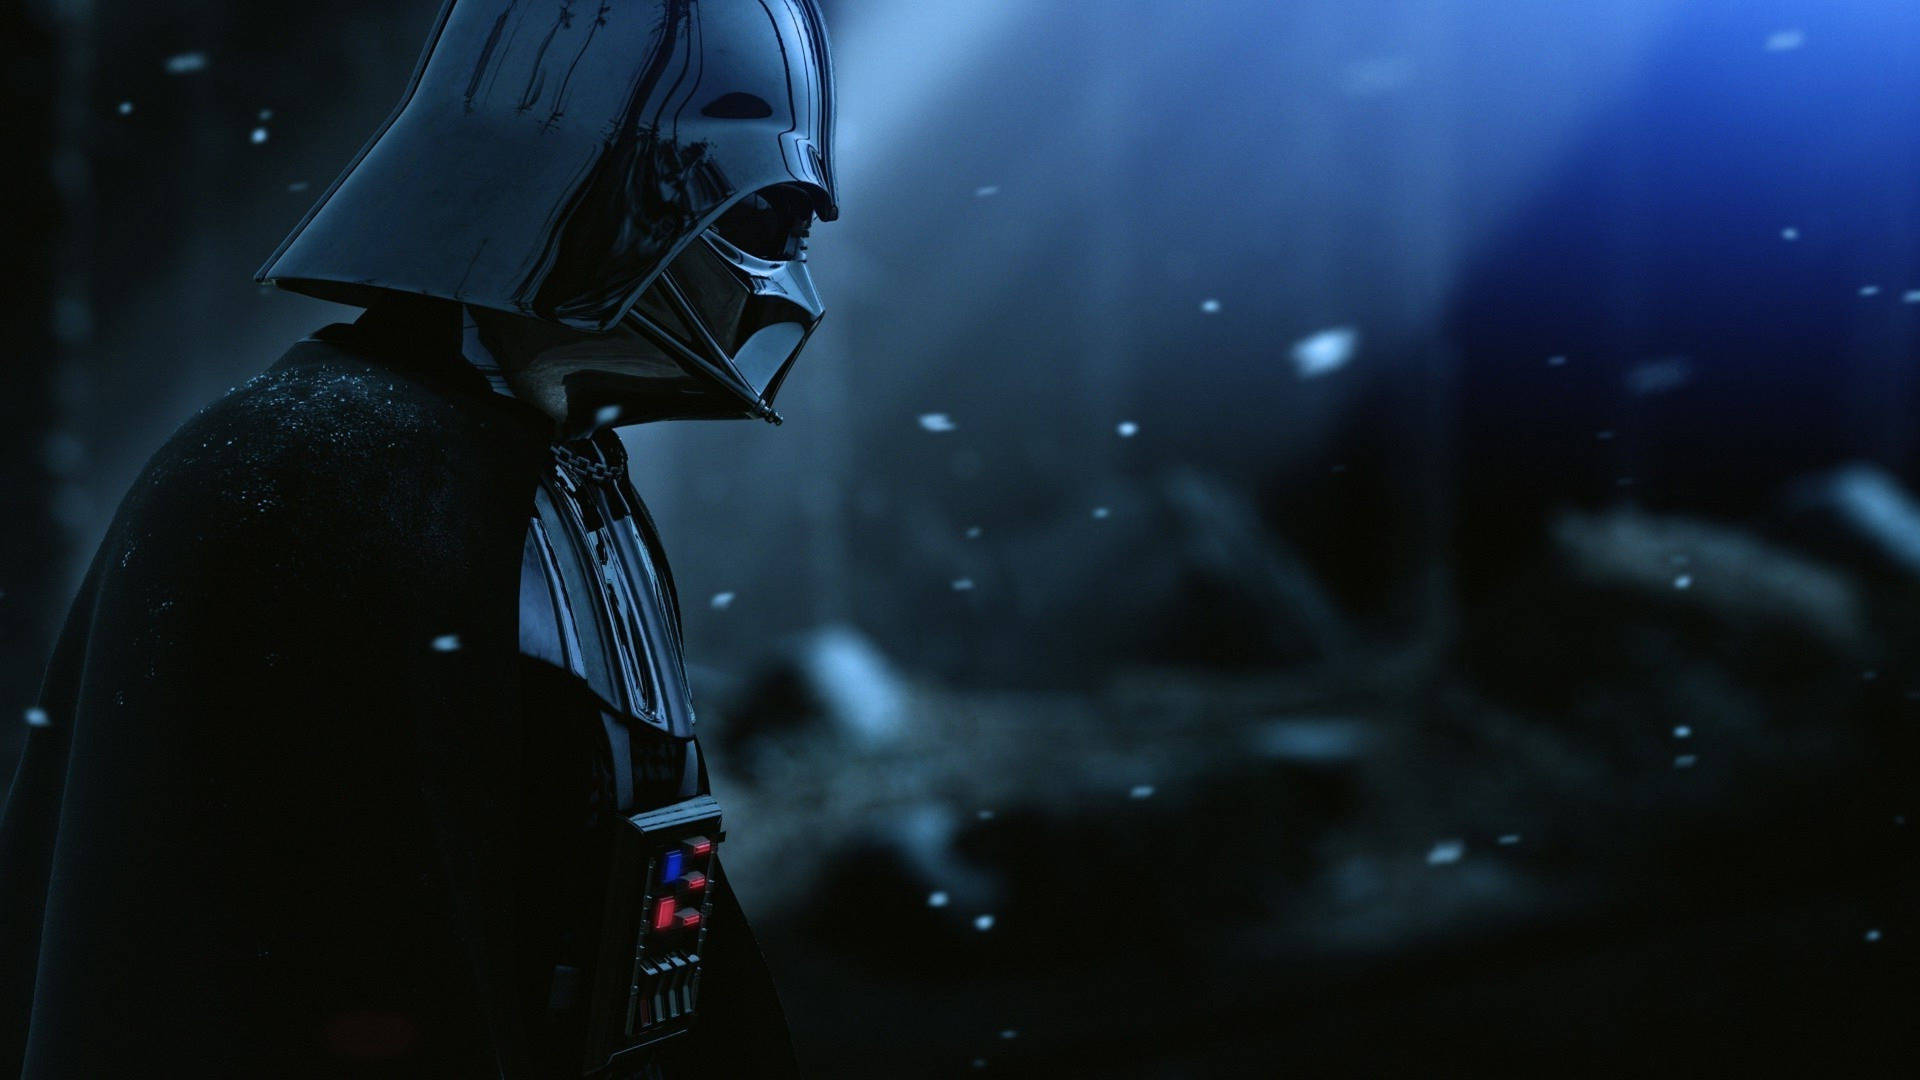 Star Wars Darth Vader Hd Background